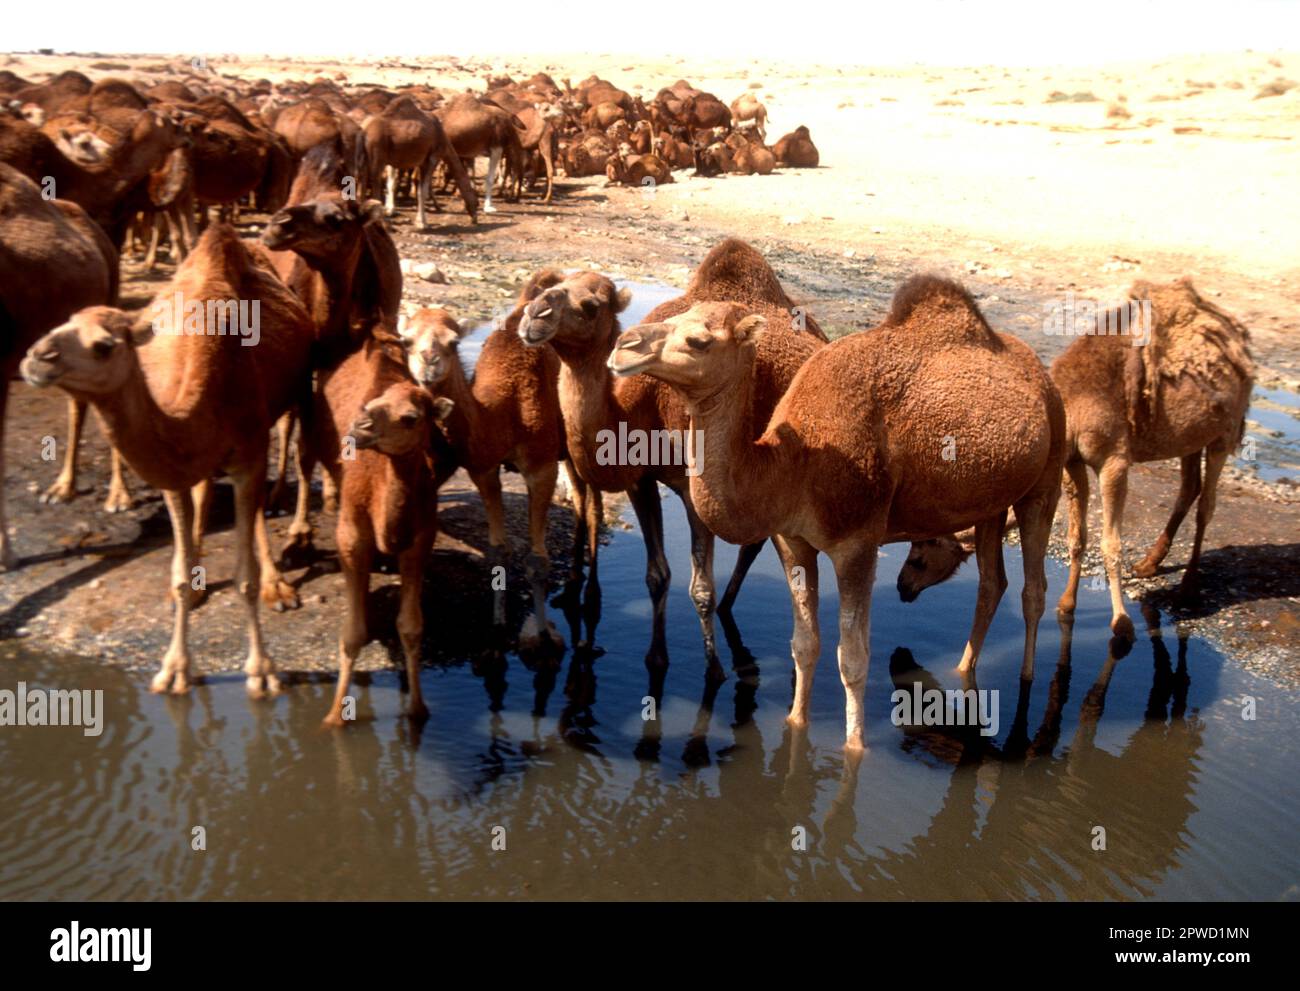 Große Kamelherde, die an einem Wüstenwasserloch im Süden Tunsias trinkt Stockfoto